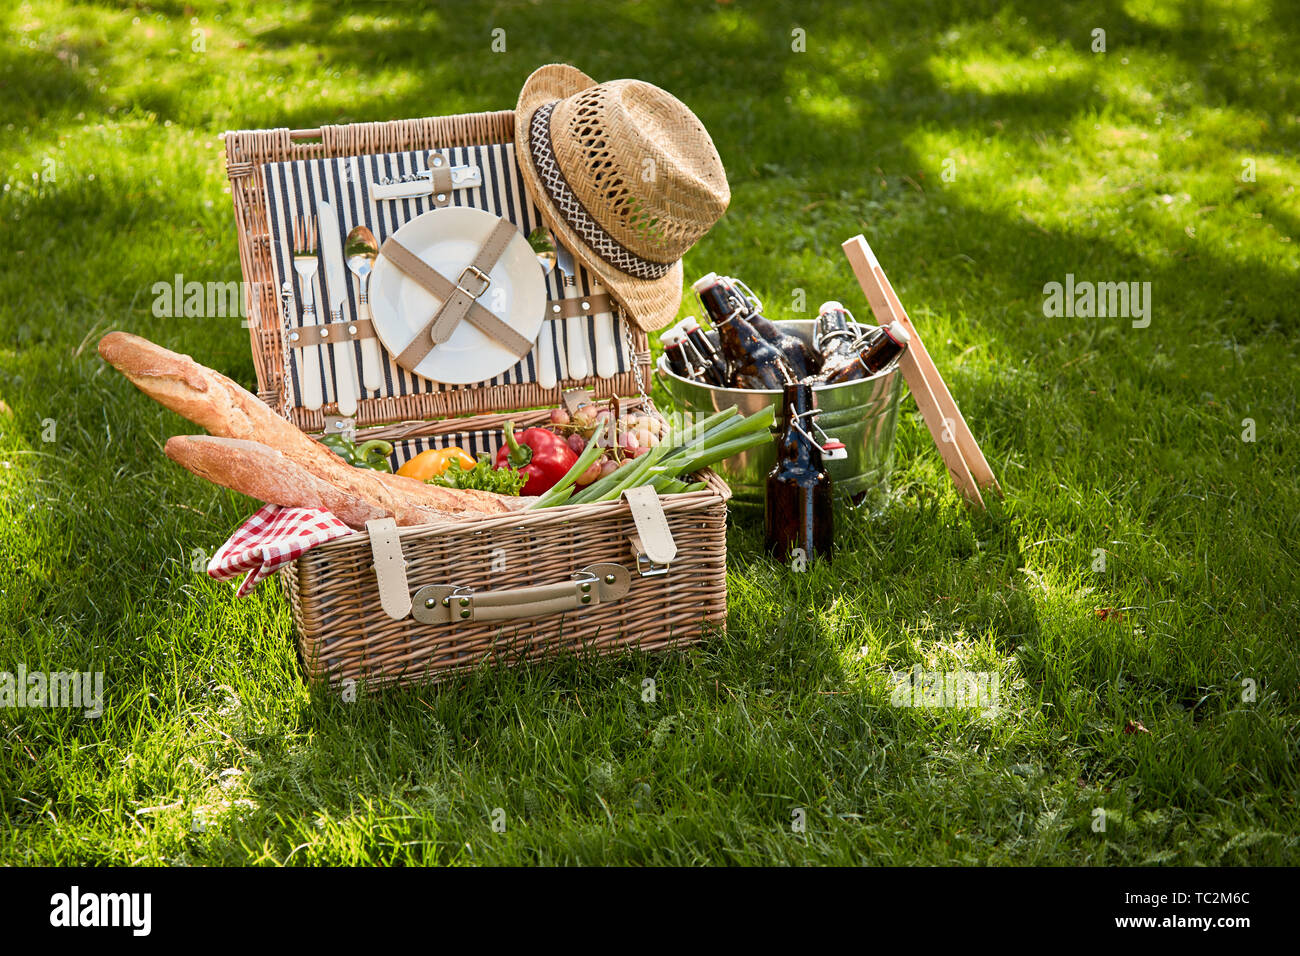 Vintage Style Sommer vegetarischen Picknick in einem Weidenkorb mit alten Strohhut und Kühler von Bierflaschen an der Seite auf saftig grünen Gras im Freien Stockfoto